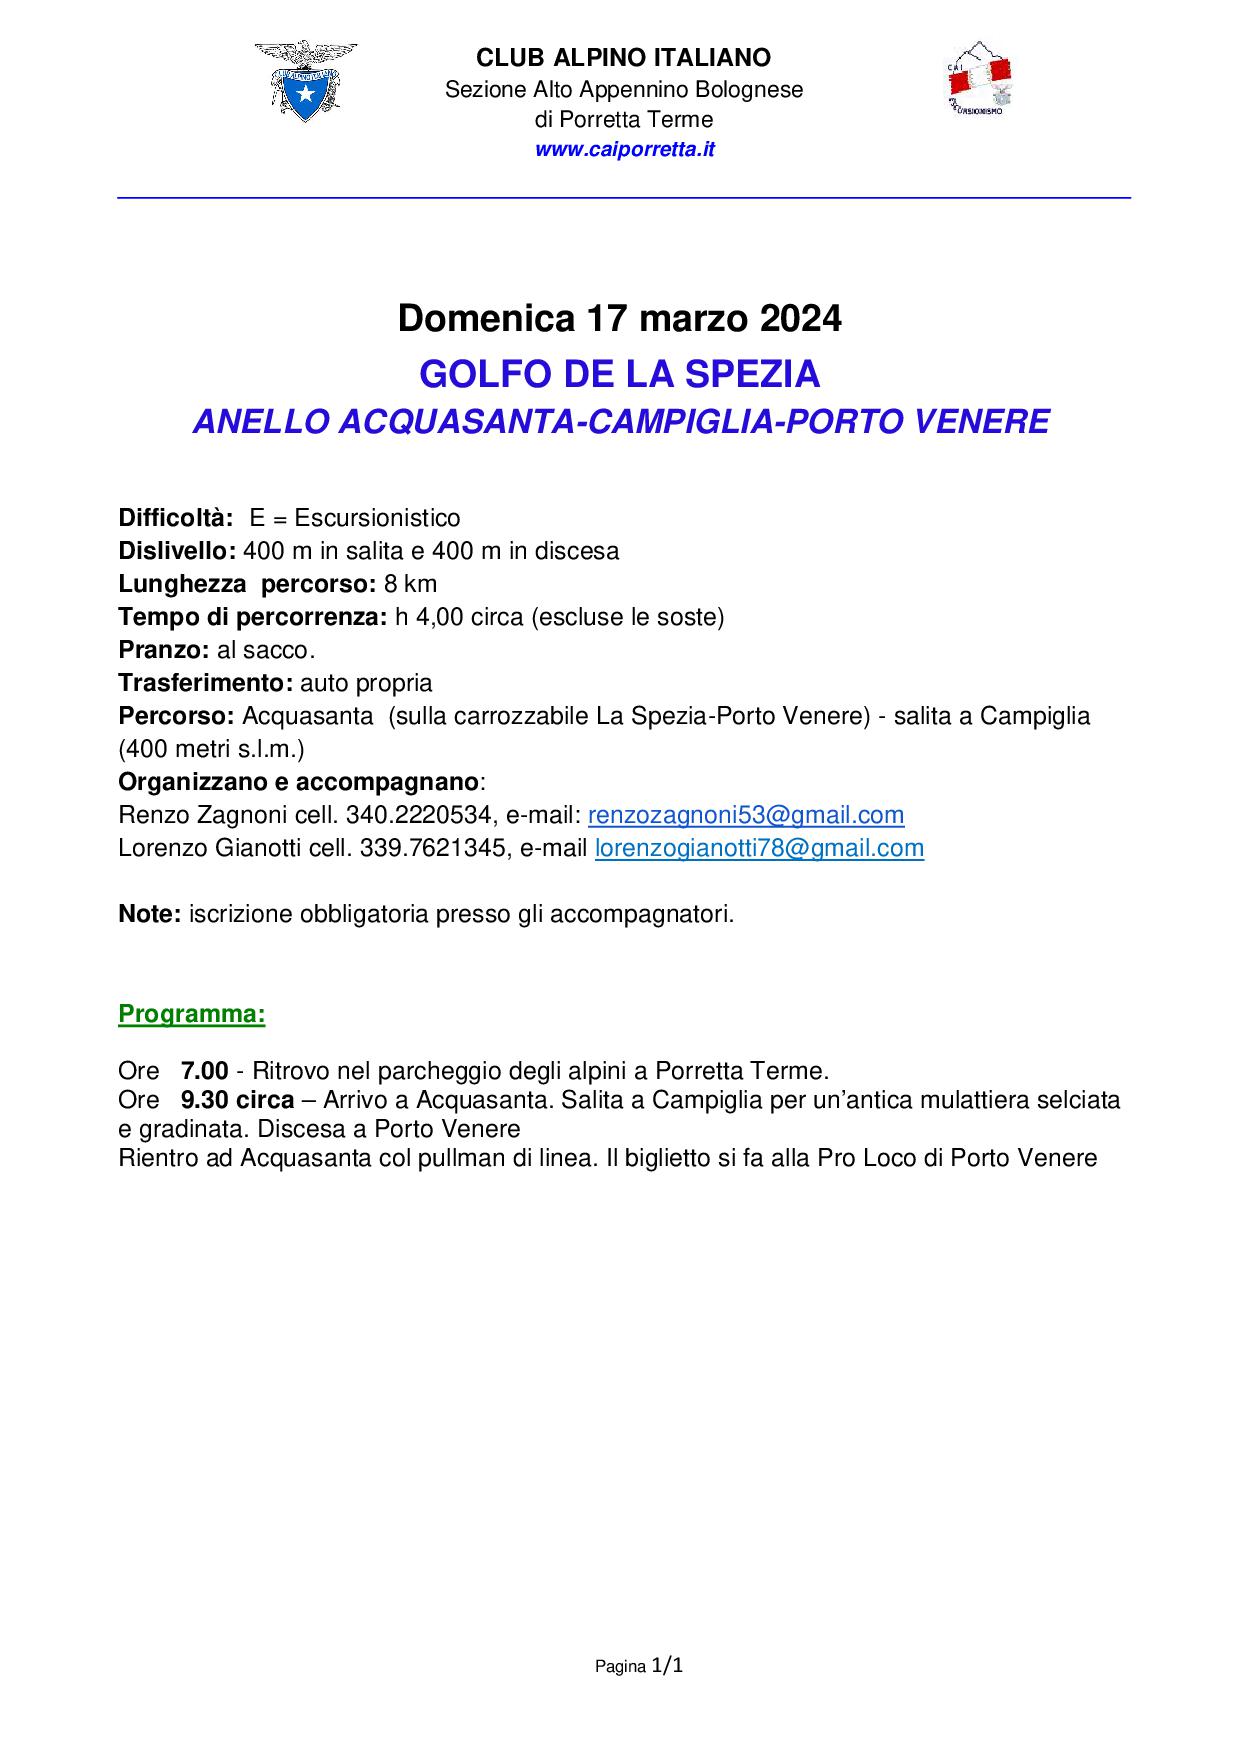 Domenica 17 marzo 2024 Liguria il Golfo de La Spezia